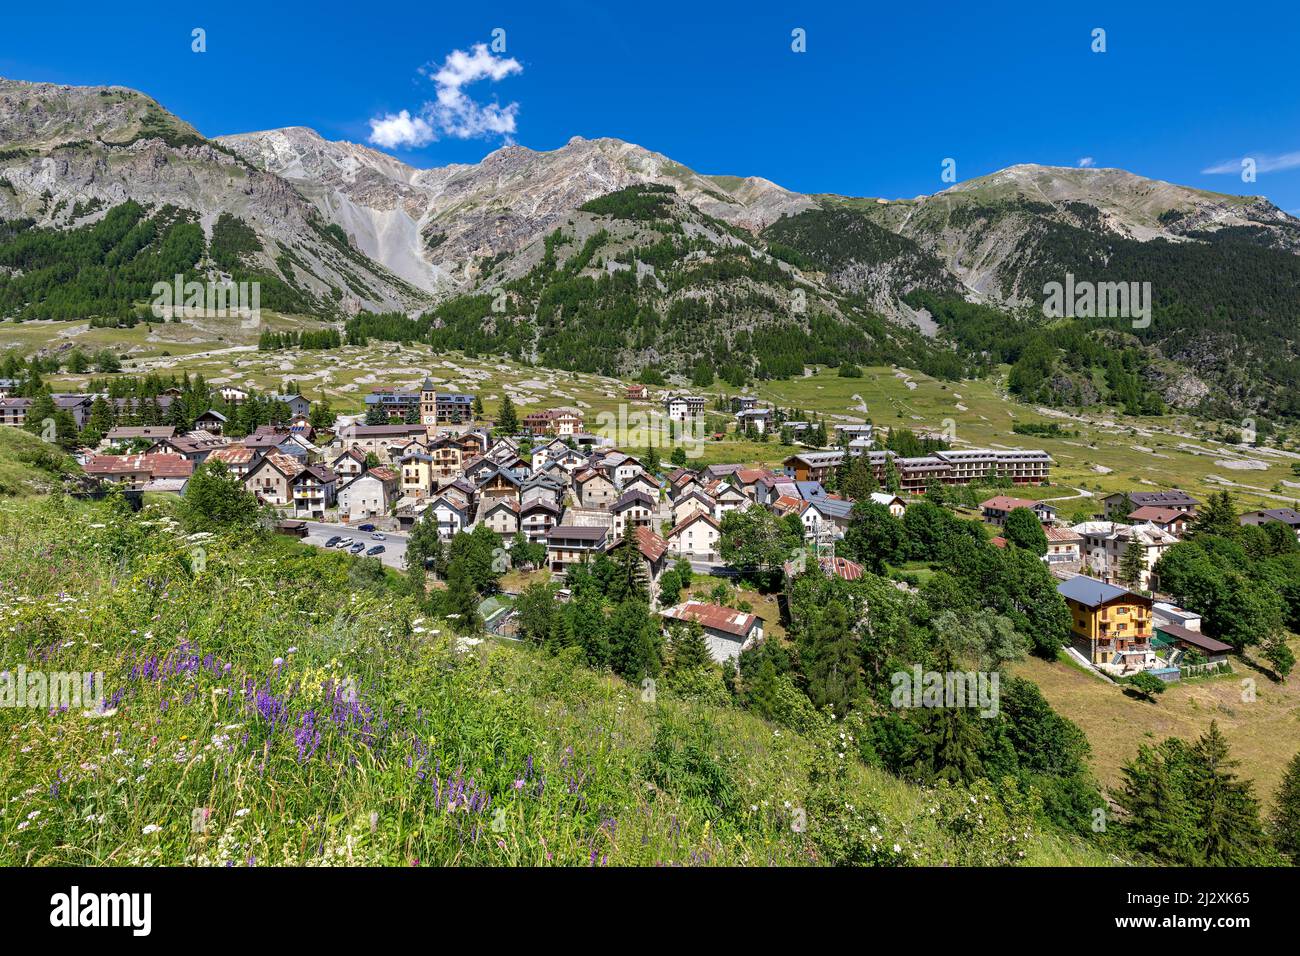 Kleine alpine Stadt Bersezio auf dem grünen Tal zwischen Bergen unter blauem Himmel im Piemont, Norditalien. Stockfoto